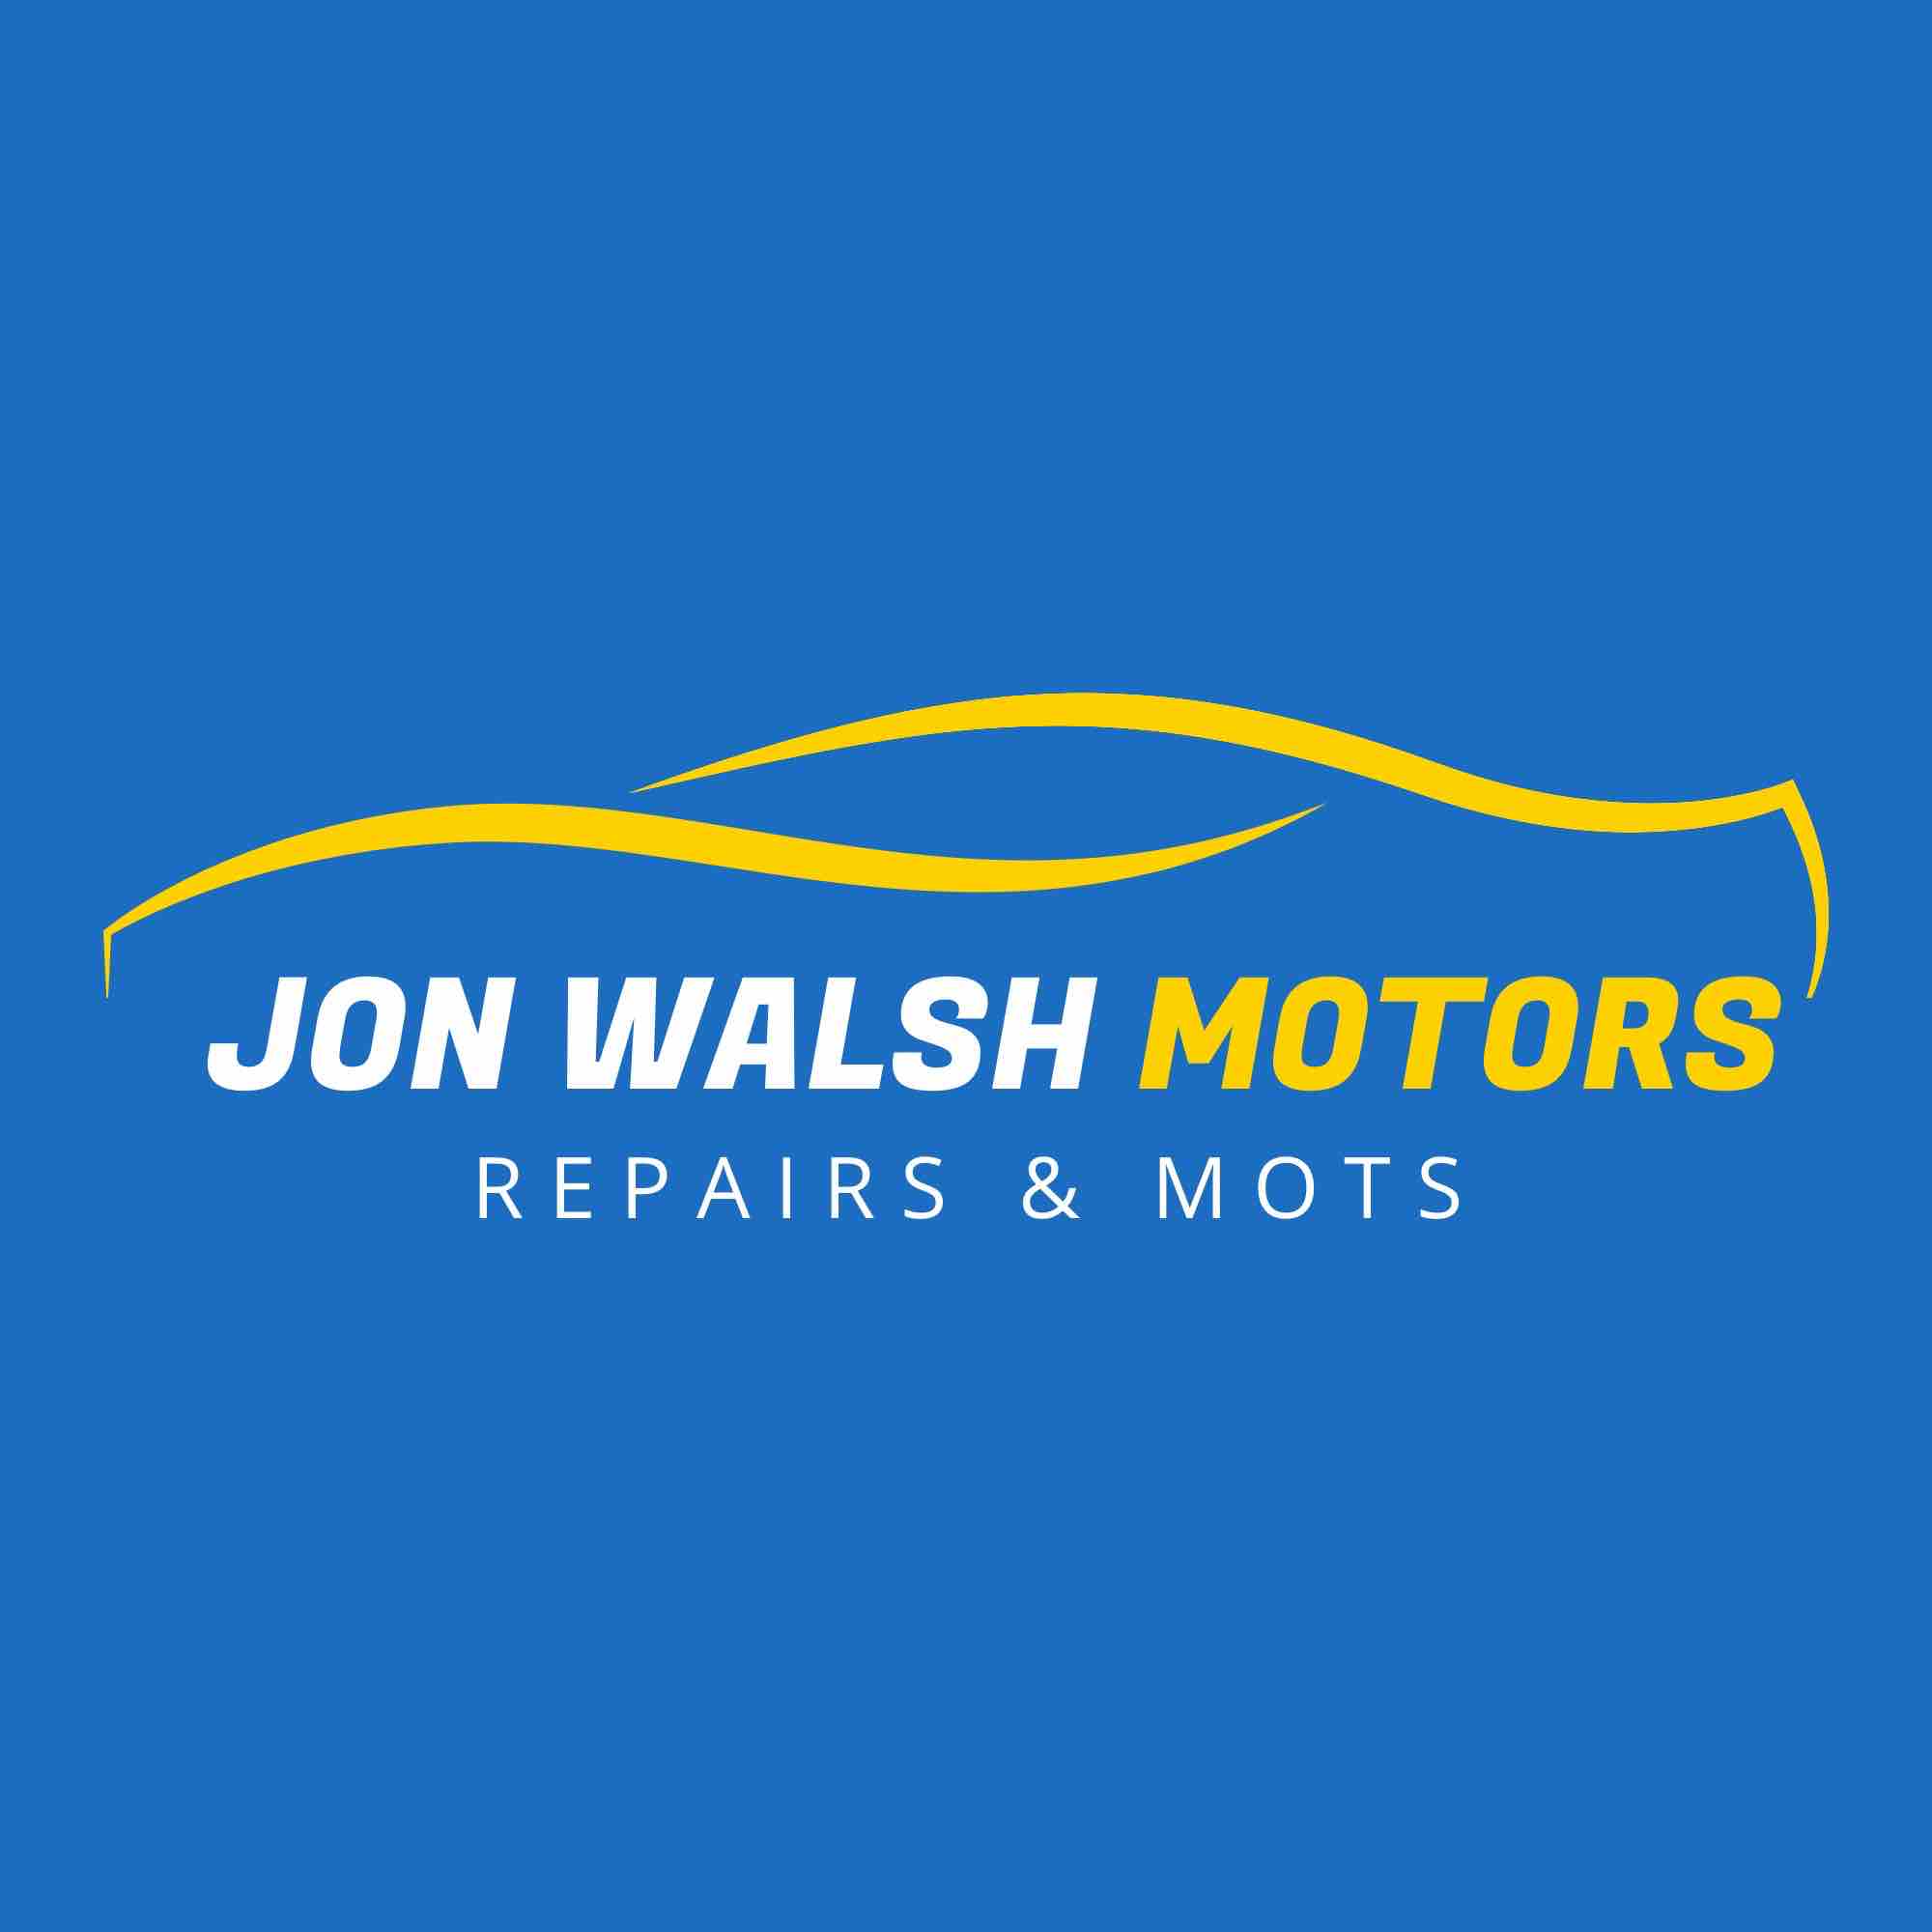 Jon Walsh Motors